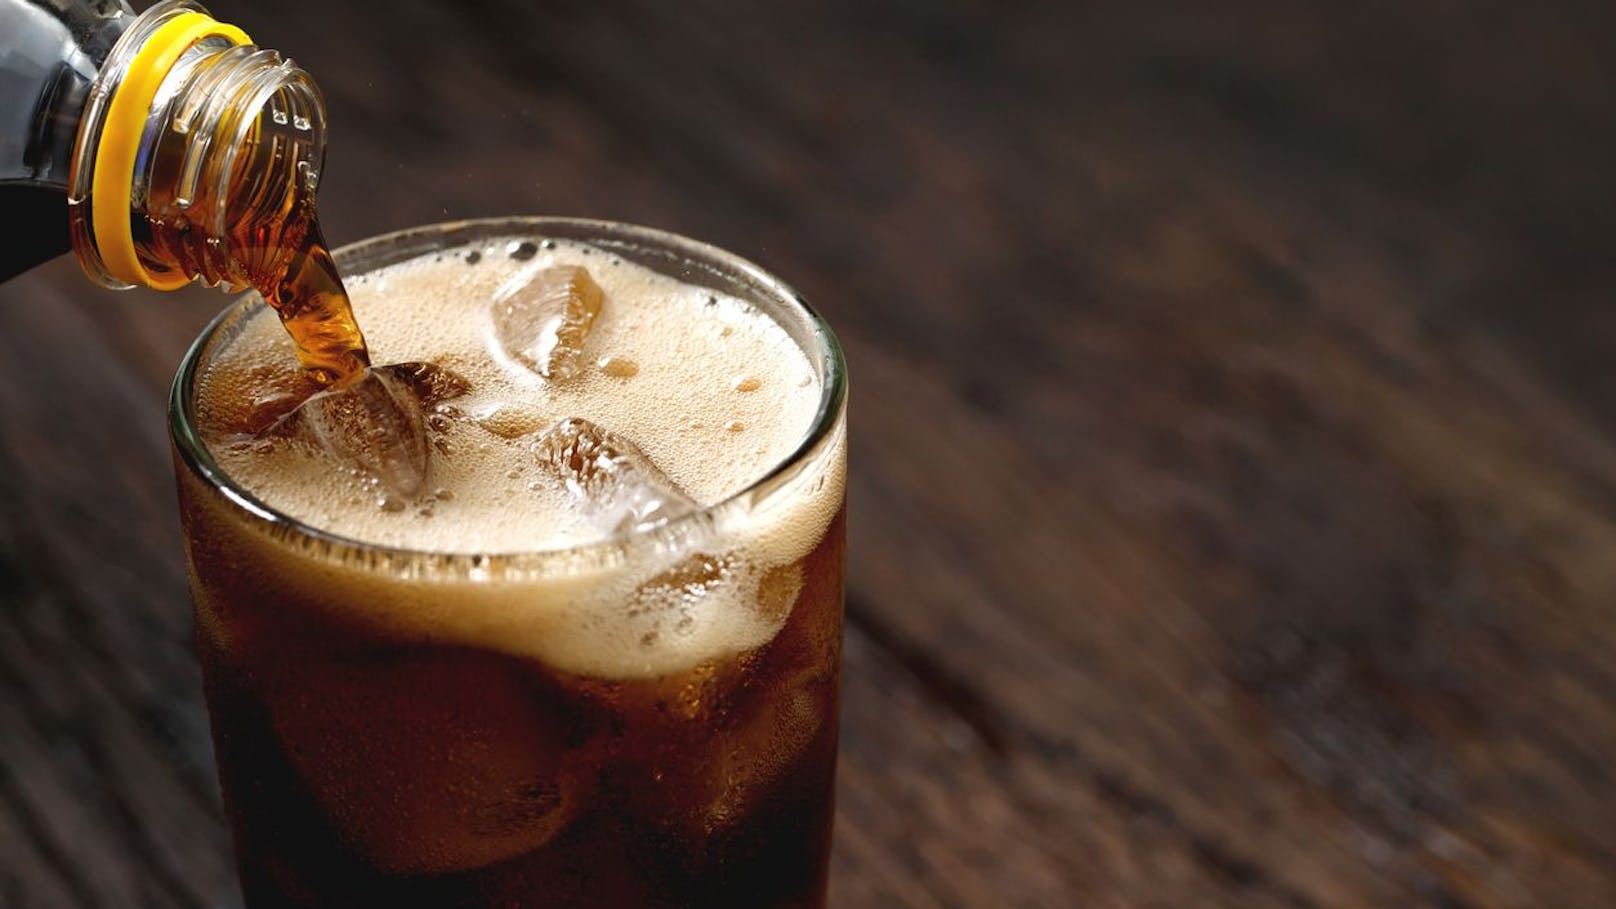 "Müsste man kübelweise trinken" – Experte zu Aspartam